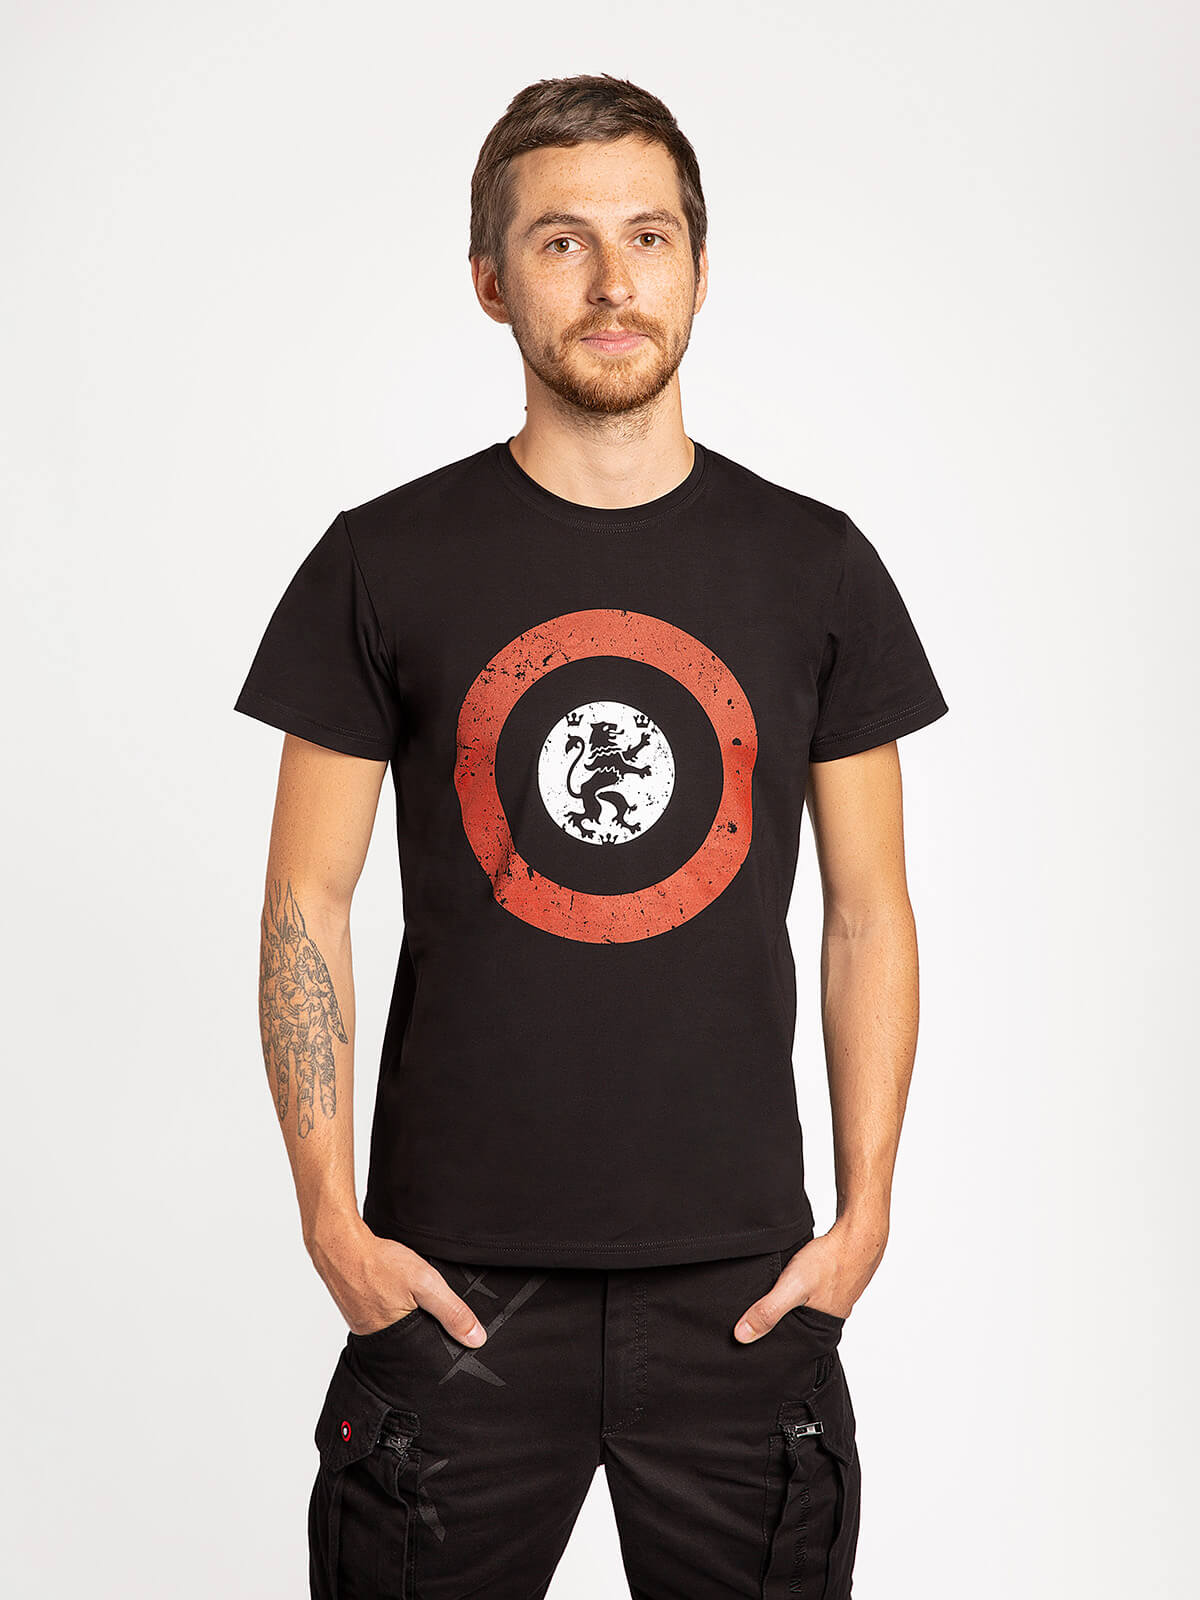 Men's T-Shirt Lion (Roundel). Color black. .